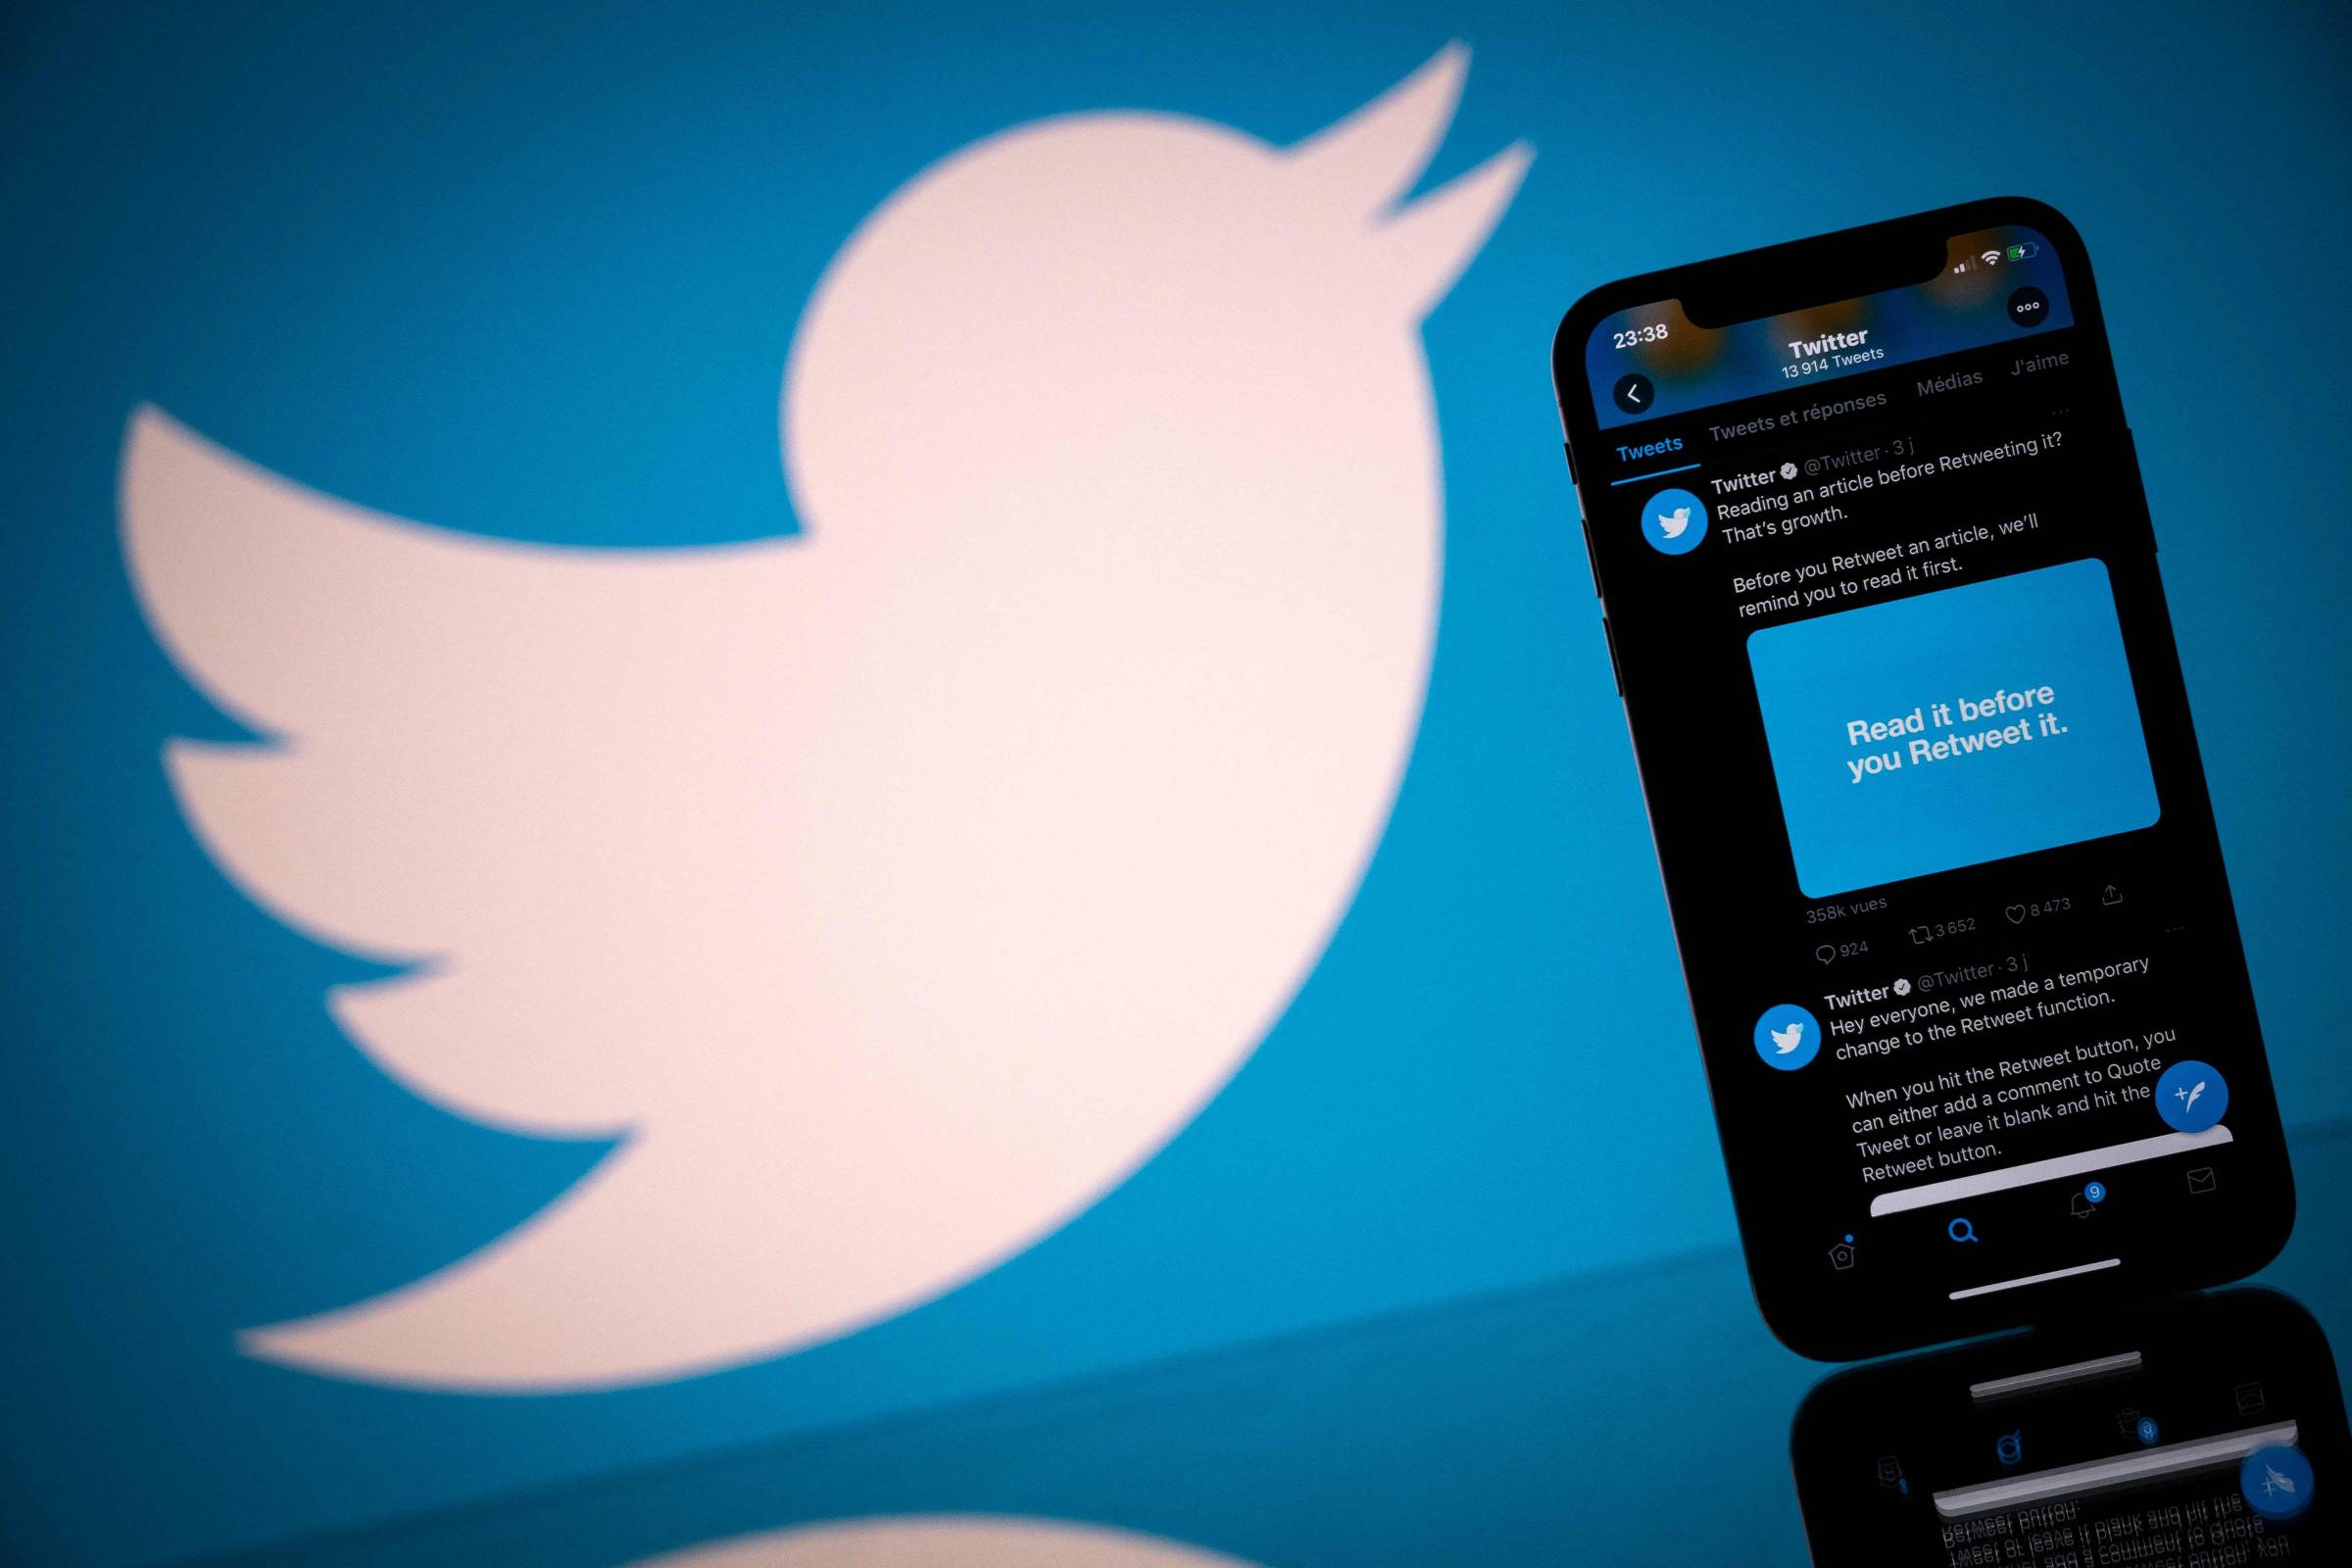 Twitter favorece el alcance de políticos y periódicos de derecha, dice el informe de la compañía – 22/10/2021 – Mundo